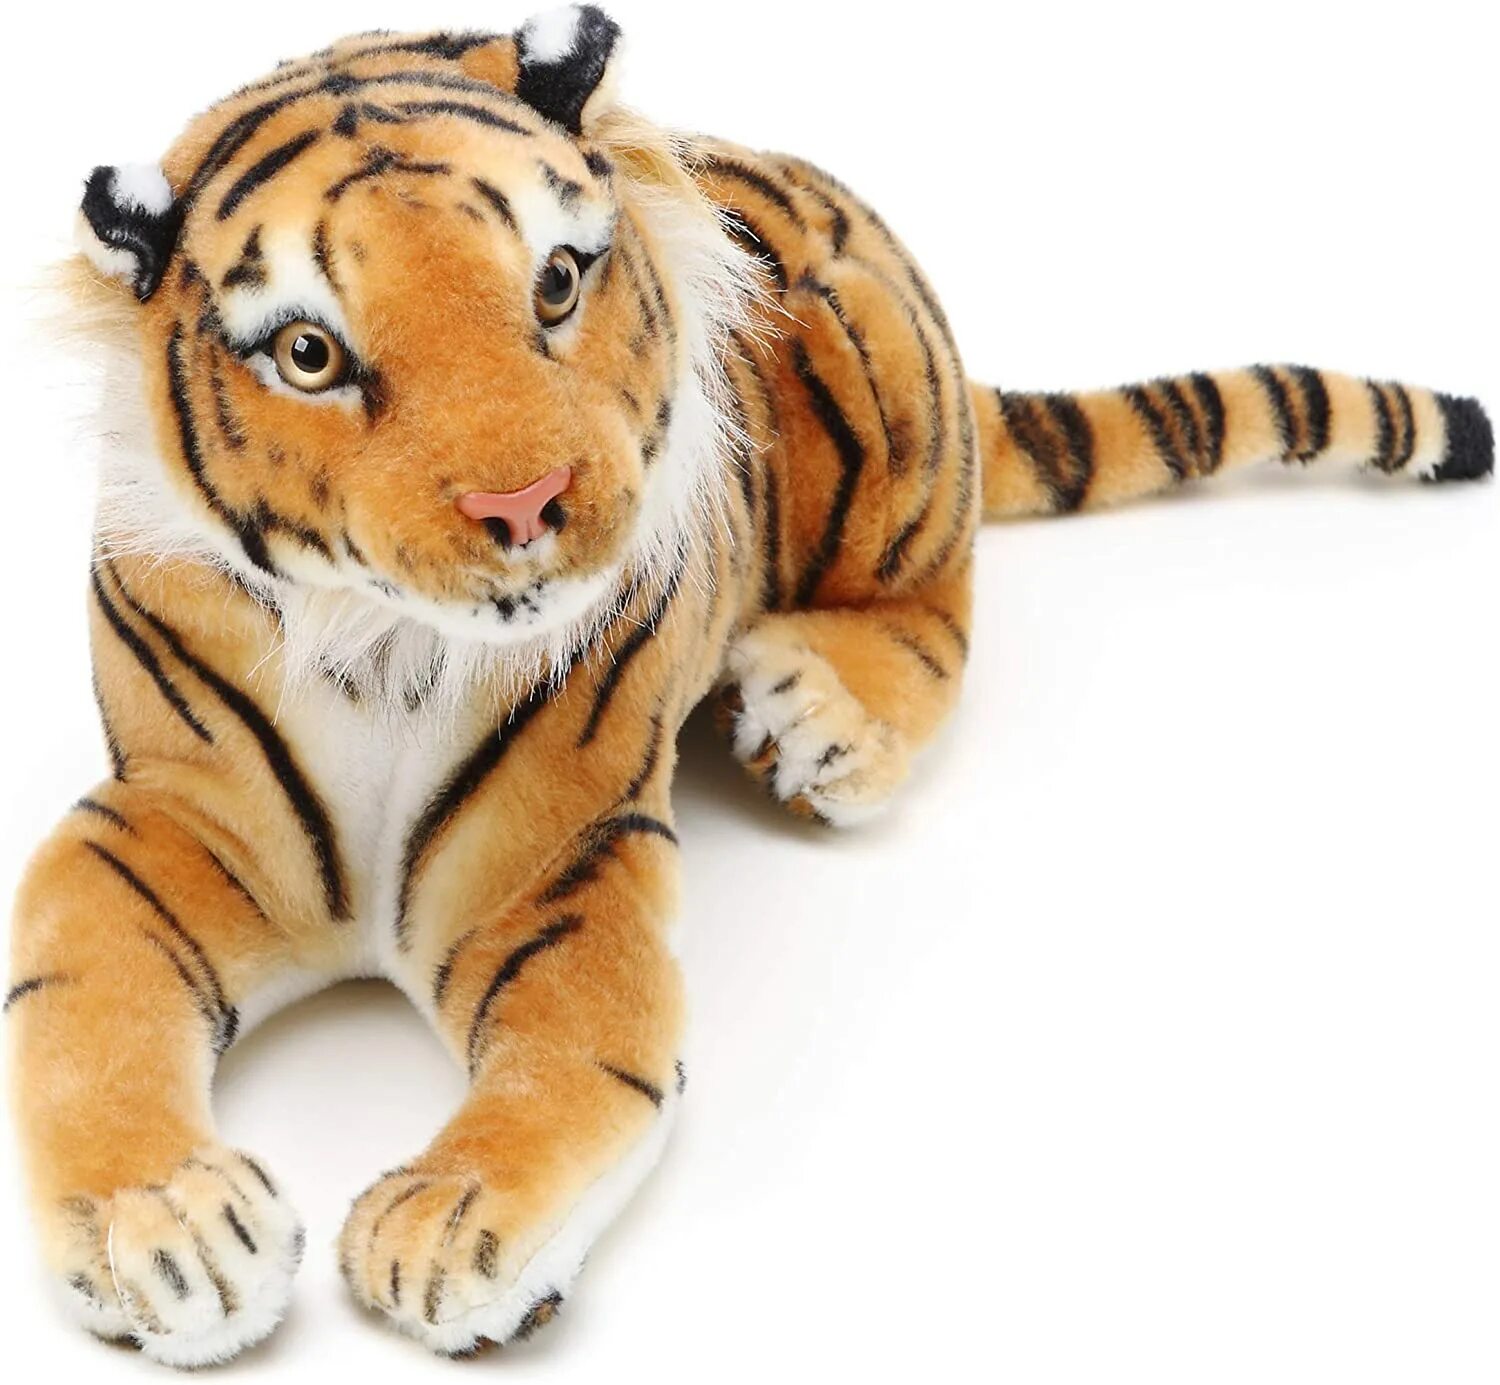 Мягкий тигр купить. Игрушка тигр. Плюшевый тигр. Большая мягкая игрушка тигр. Тигнари игрушка мягкая.